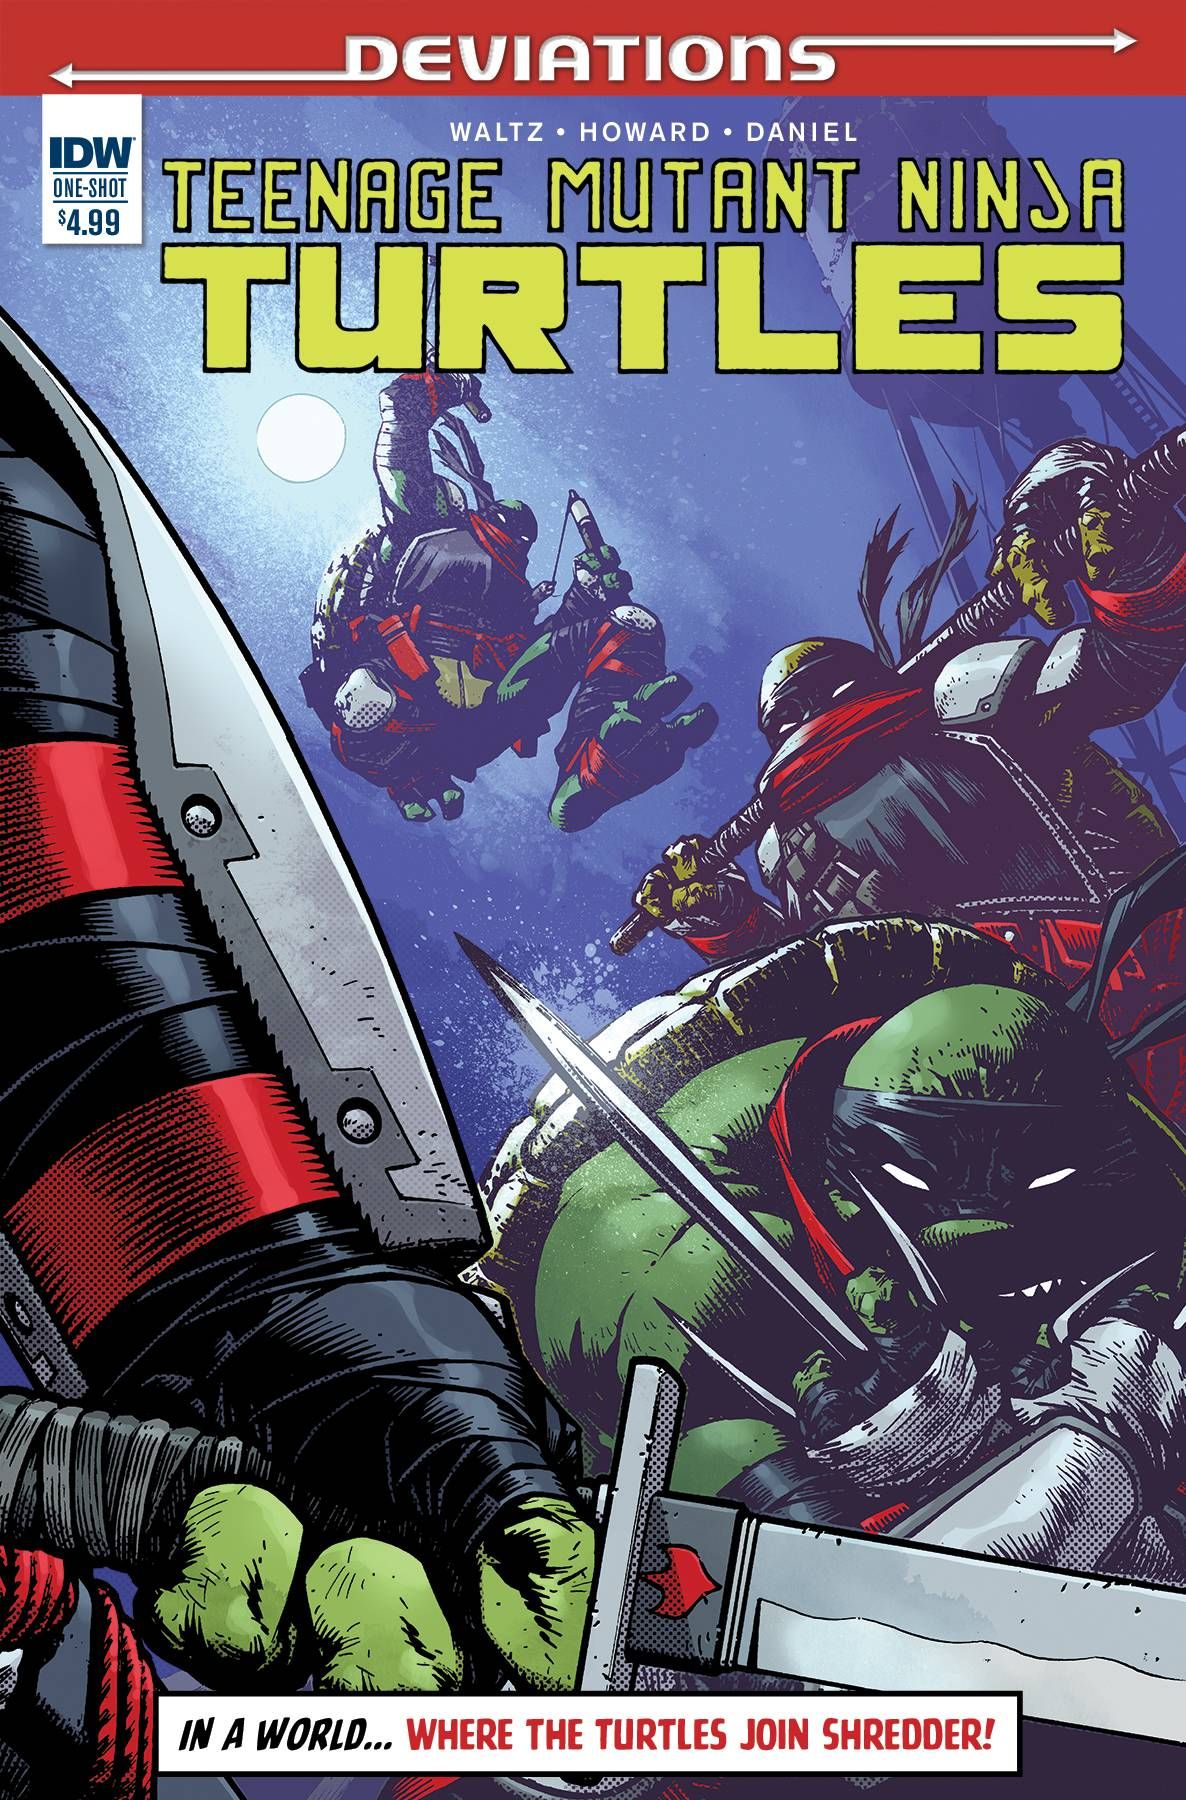 Teenage Mutant Ninja Turtles Deviations Comic